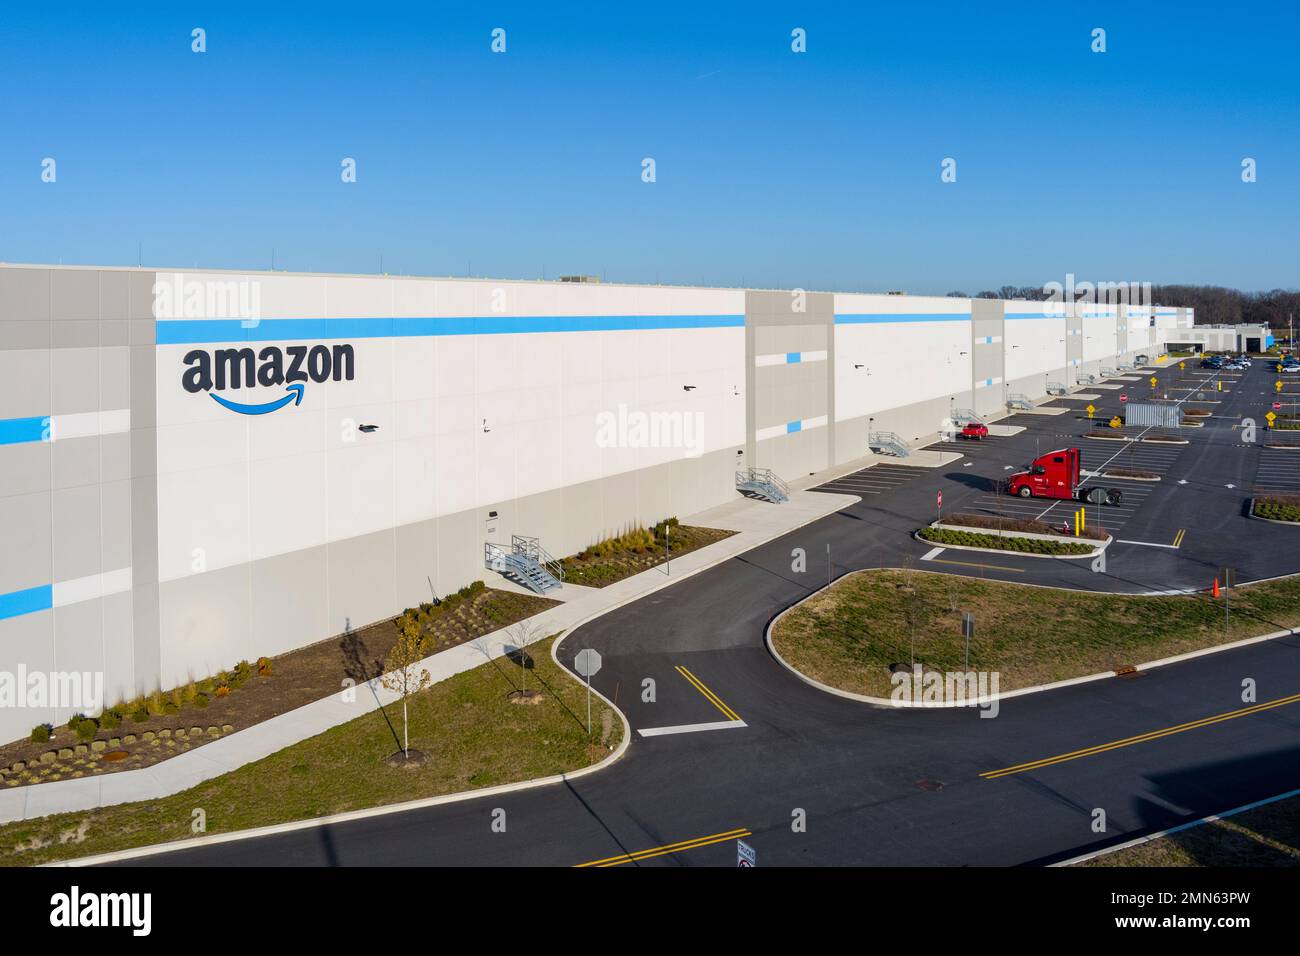 Ripresa aerea del logo Amazon sul lato del magazzino, Pennsylvania, USA Foto Stock